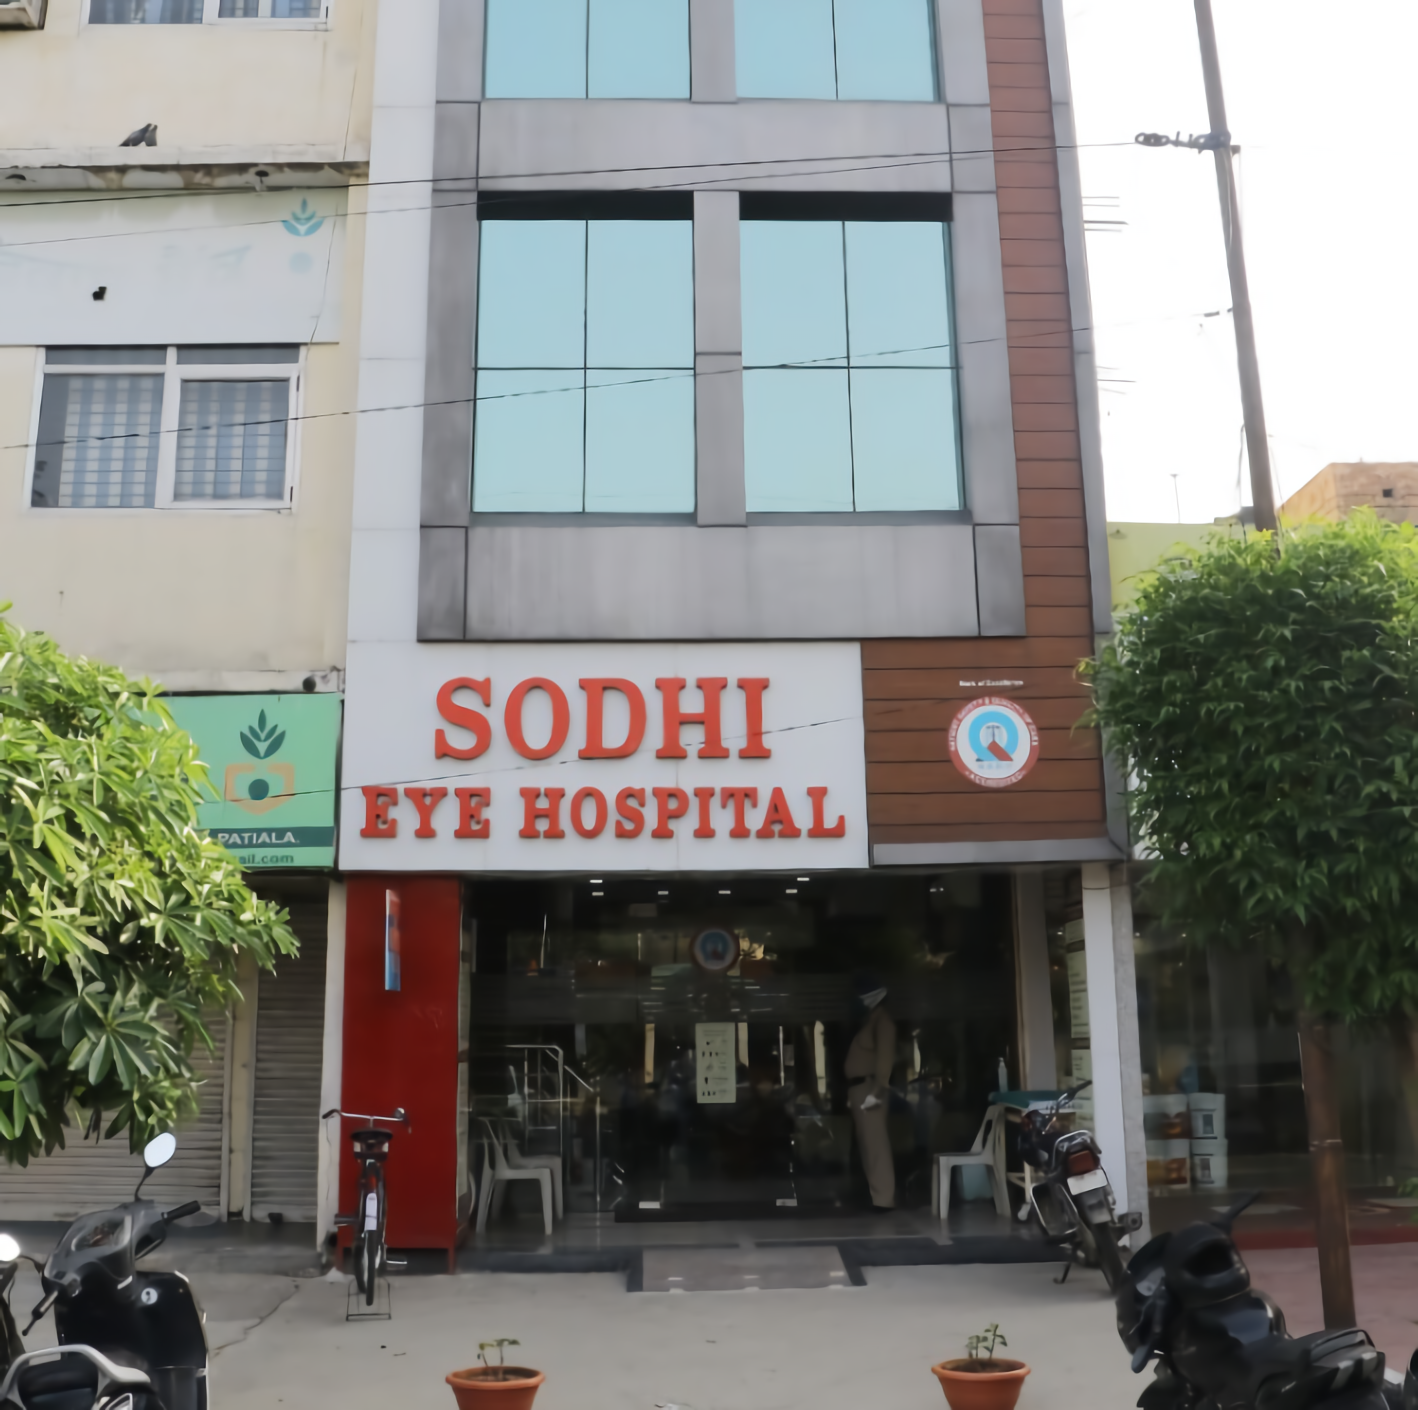 Sodhi Eye Hospital